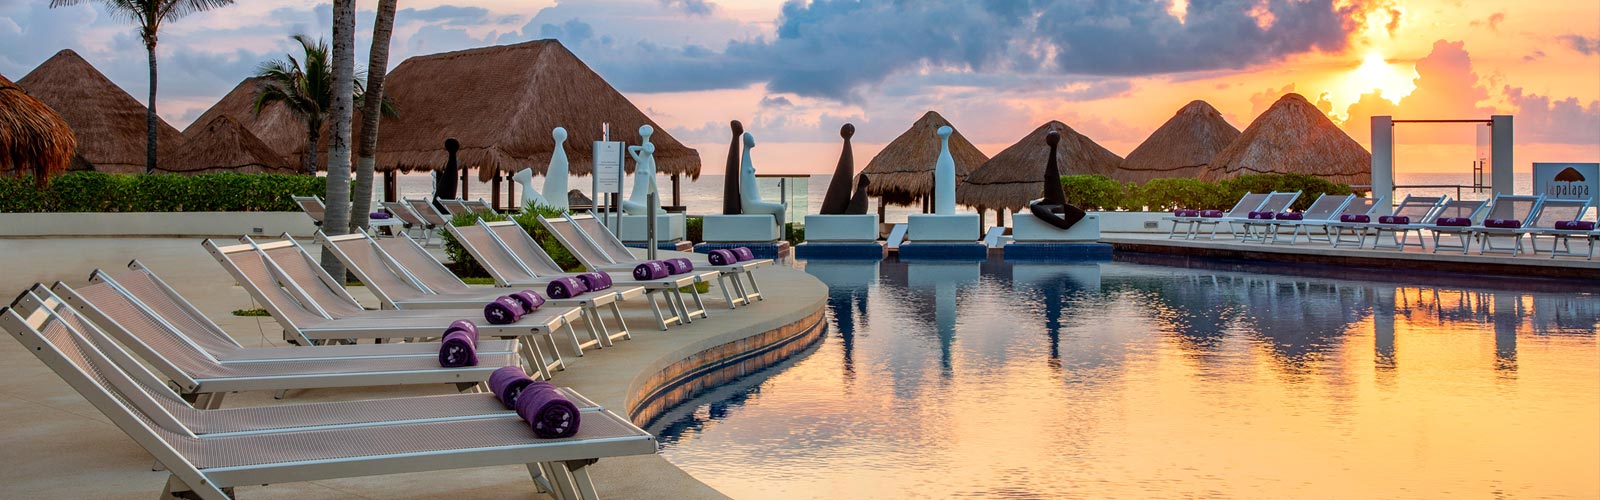 Instant savings - Paradisus Cancun | WestJet official site